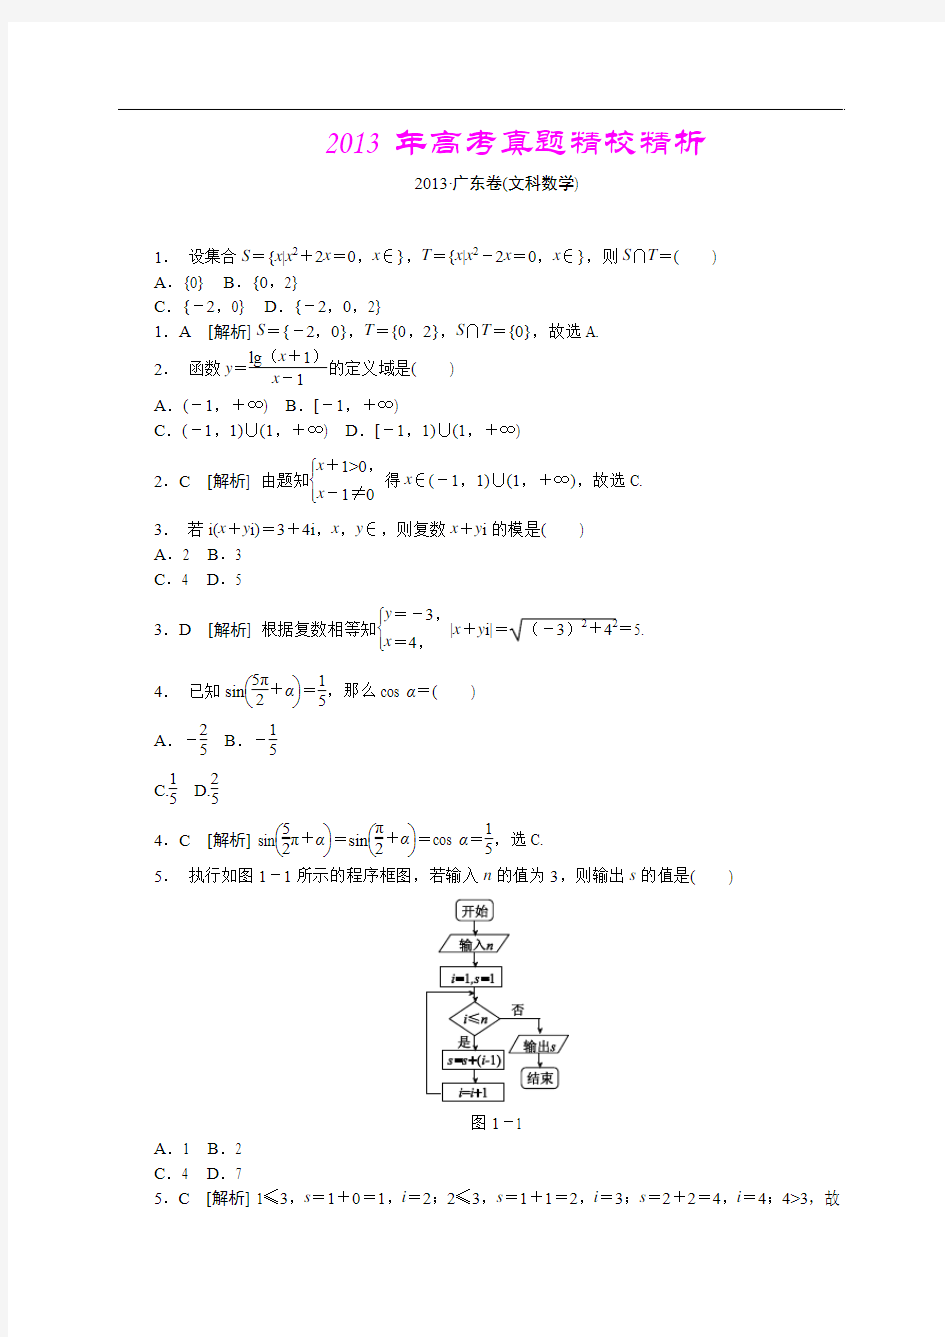 2013年高考真题—文科数学(广东卷)精校精析